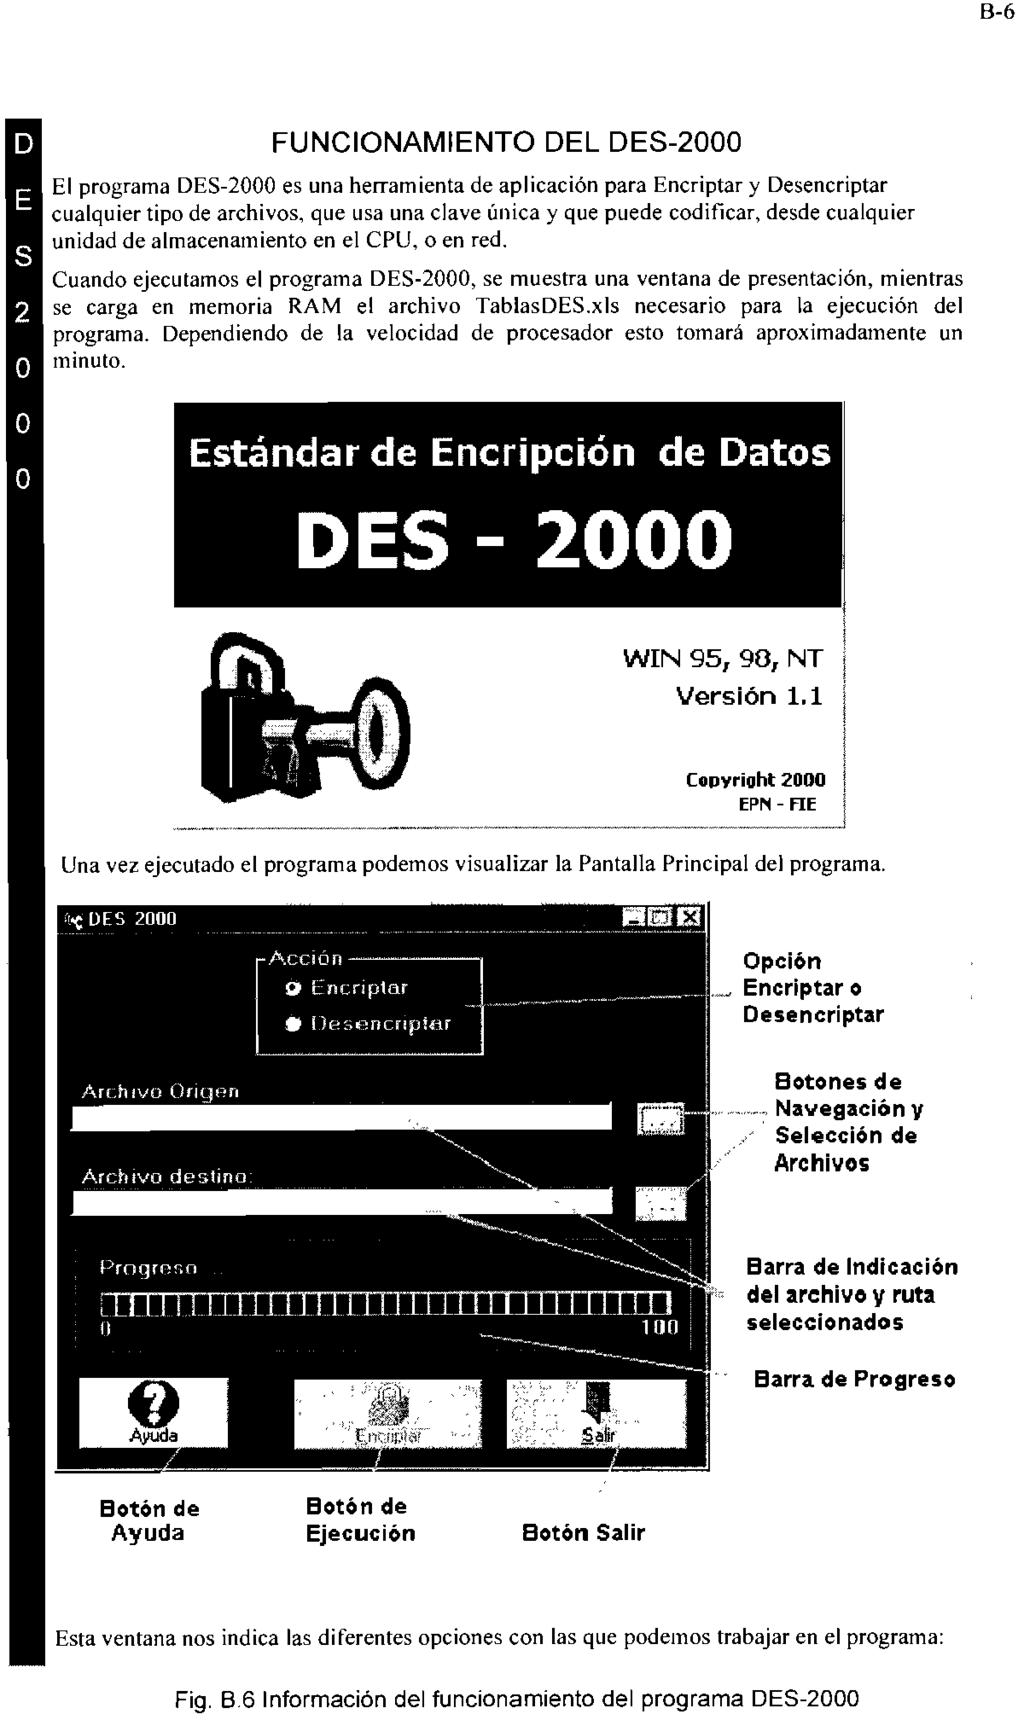 B-6 FUNCIONAMIENTO DEL DES-2000 El programa DES-2000 es una herramienta de aplicación para Encriptar y Desencriptar cualquier tipo de archivos, que usa una clave única y que puede codificar, desde